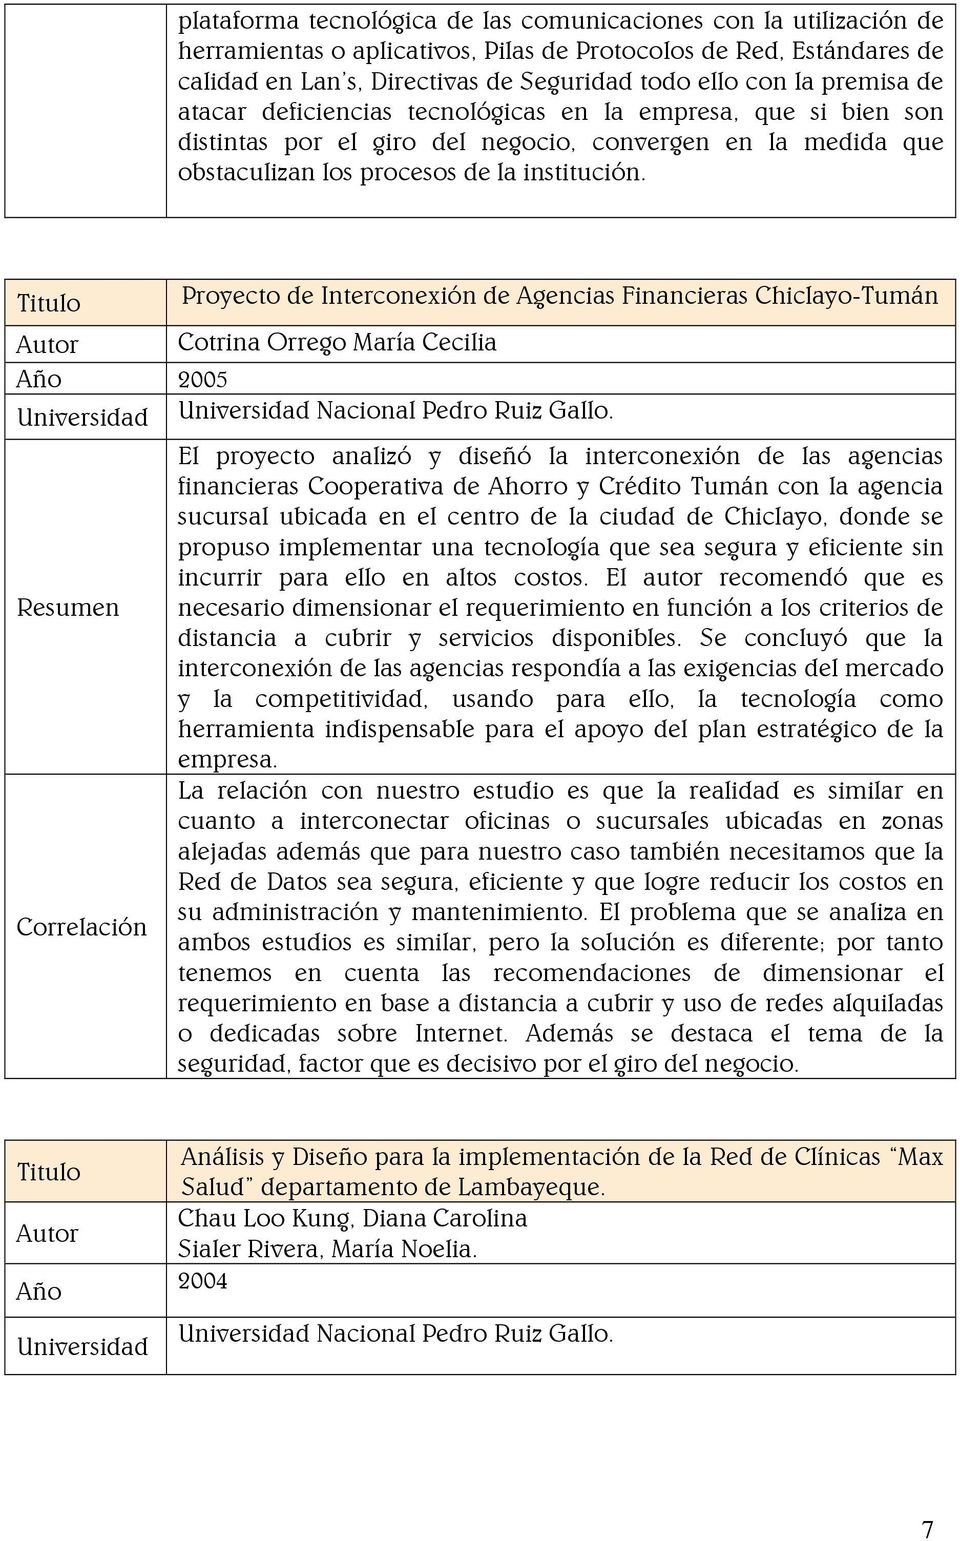 Titulo Proyecto de Interconexión de Agencias Financieras Chiclayo-Tumán Autor Cotrina Orrego María Cecilia Año 2005 Universidad Universidad Nacional Pedro Ruiz Gallo.